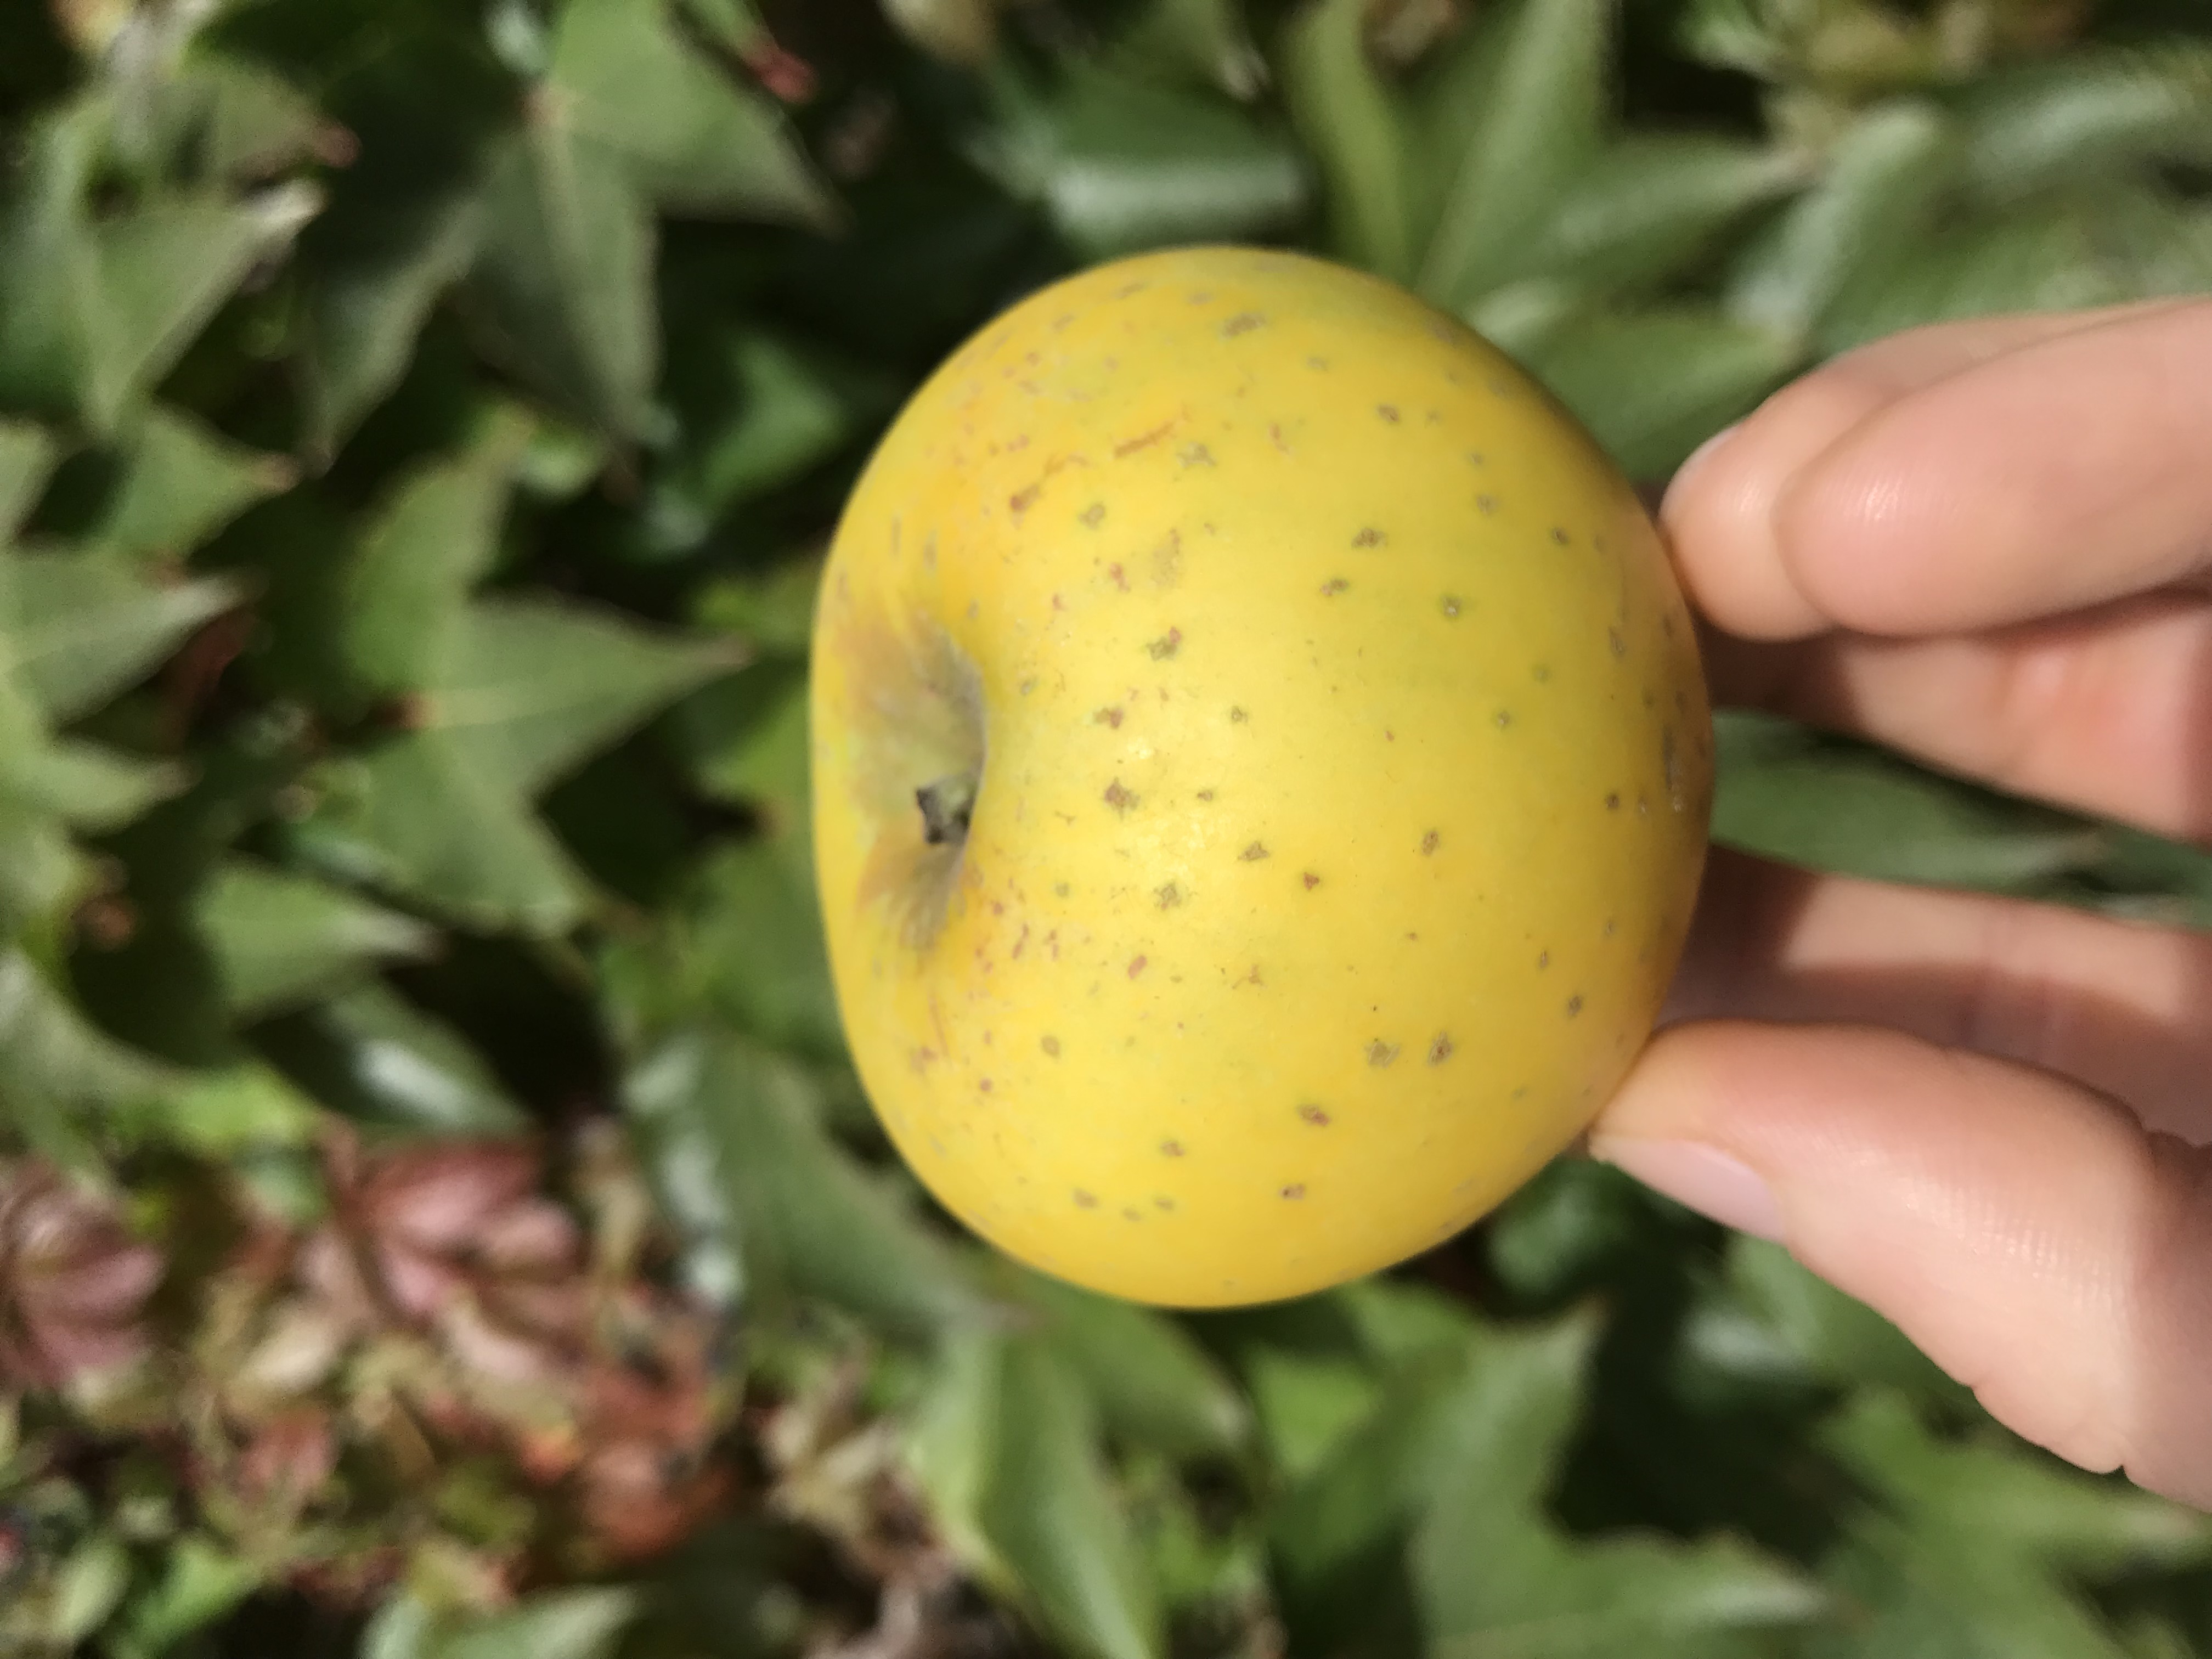 Apfelbaum  Ananasrenette